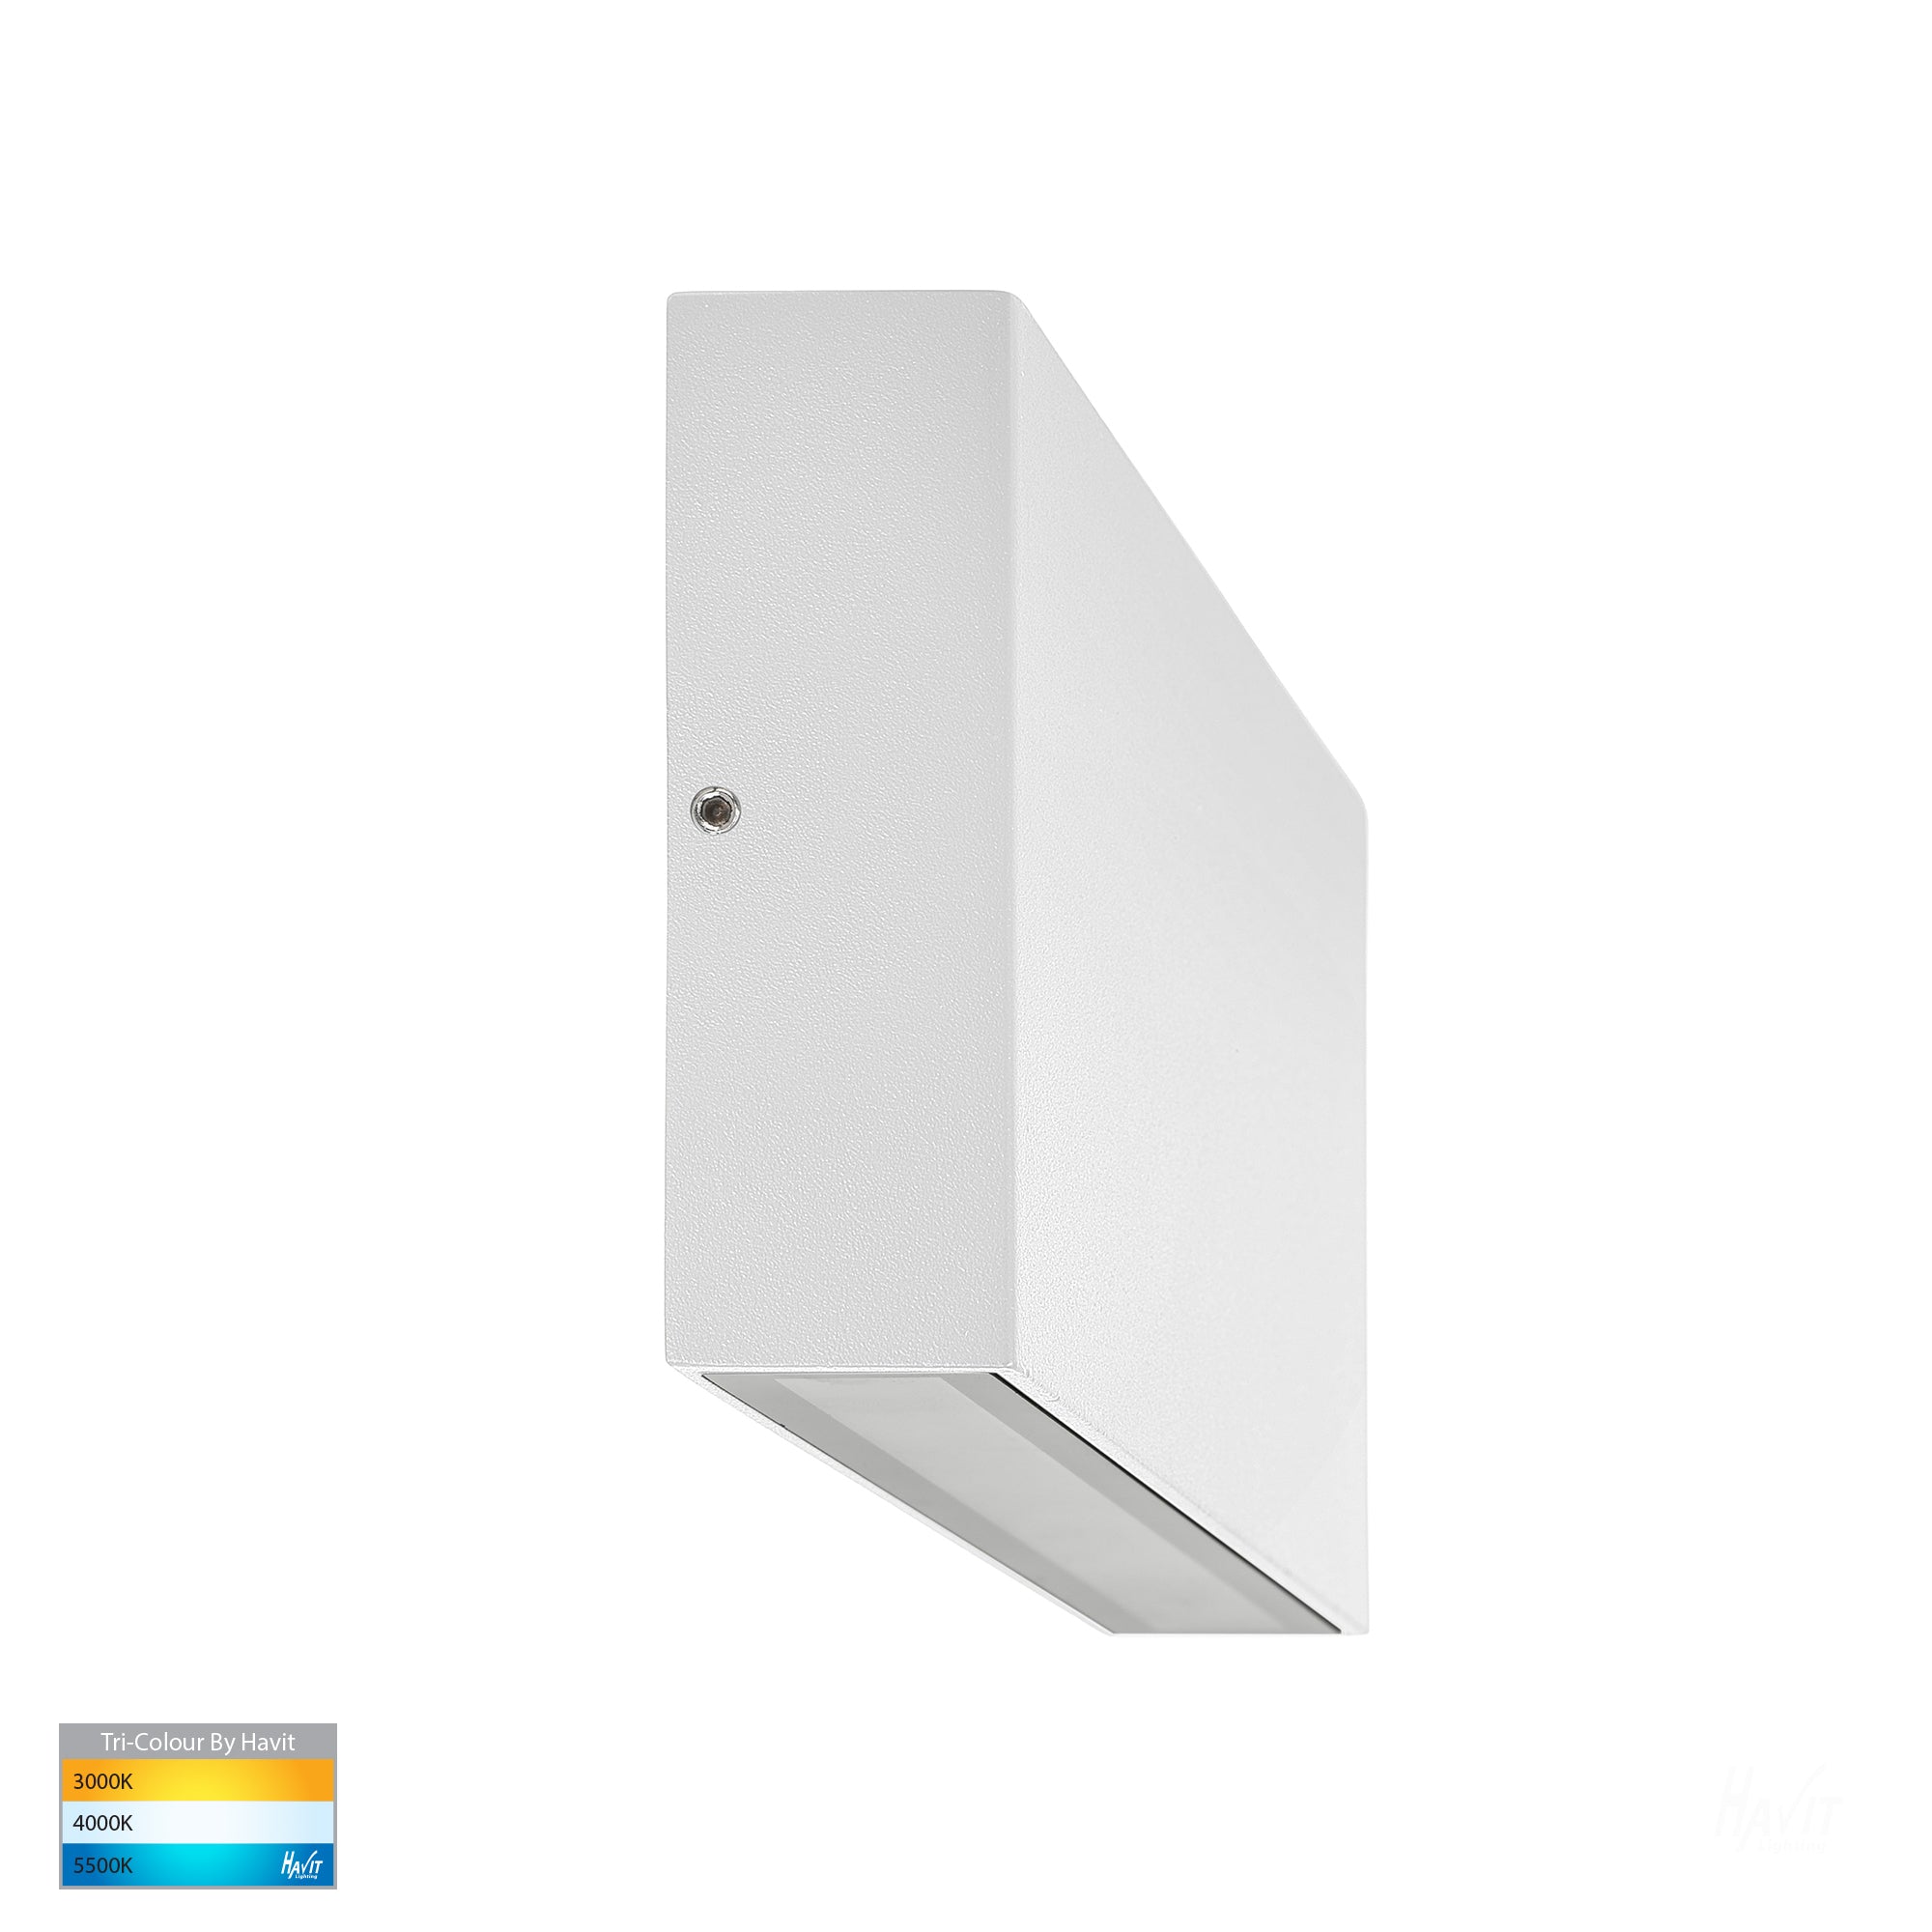 HV3646T-WHT - Essil White Up & Down LED Wall Light